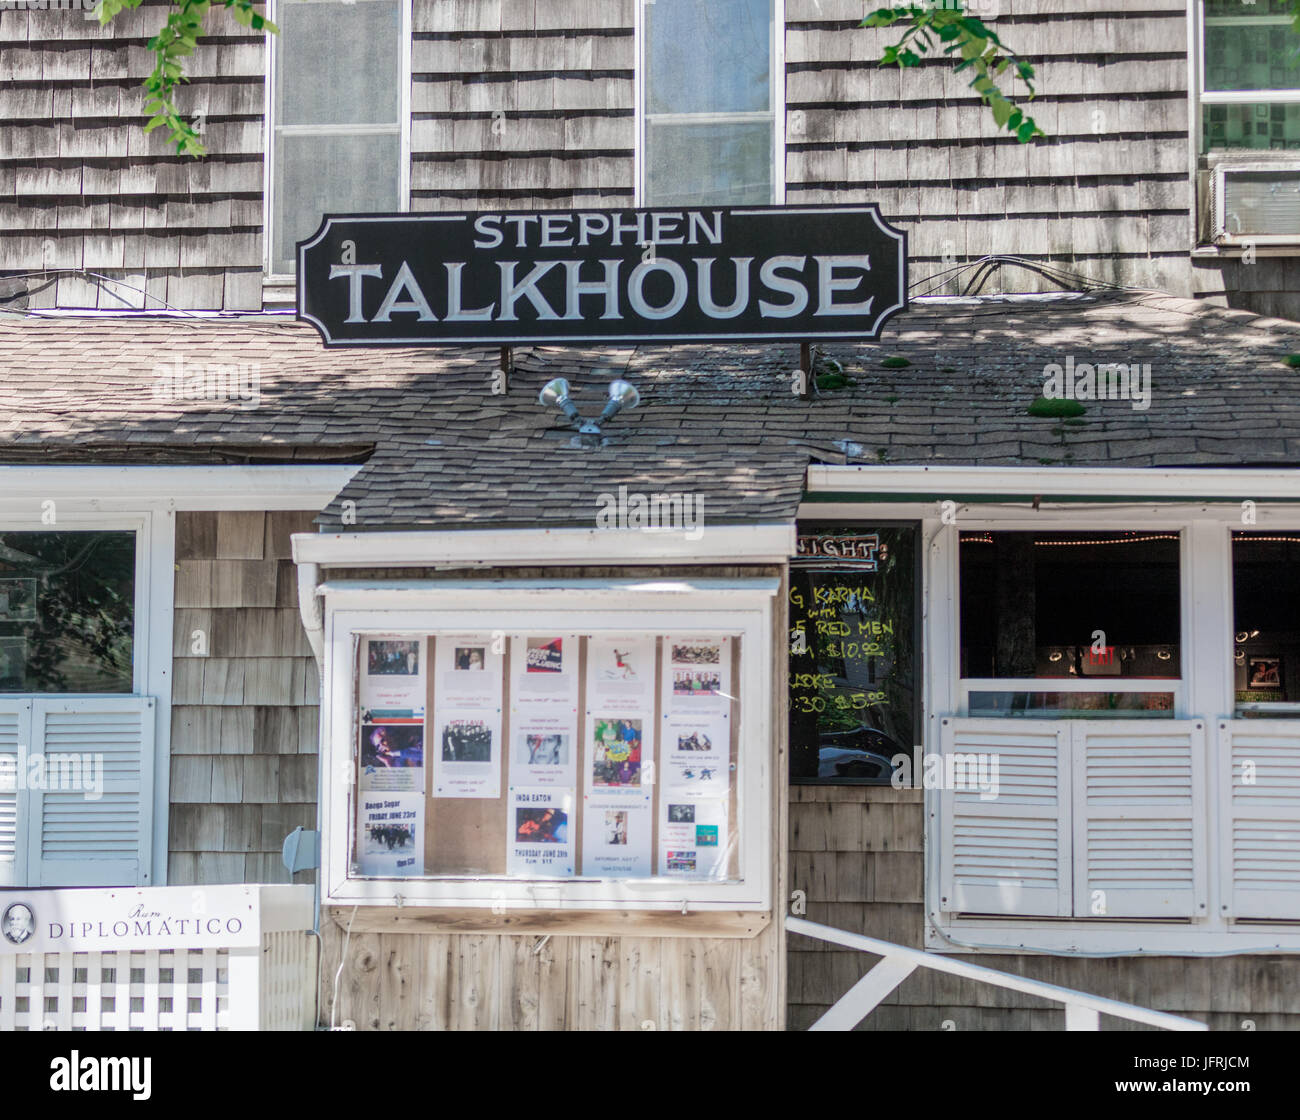 Stephen Talkhouse, amgansett, ny Stock Photo